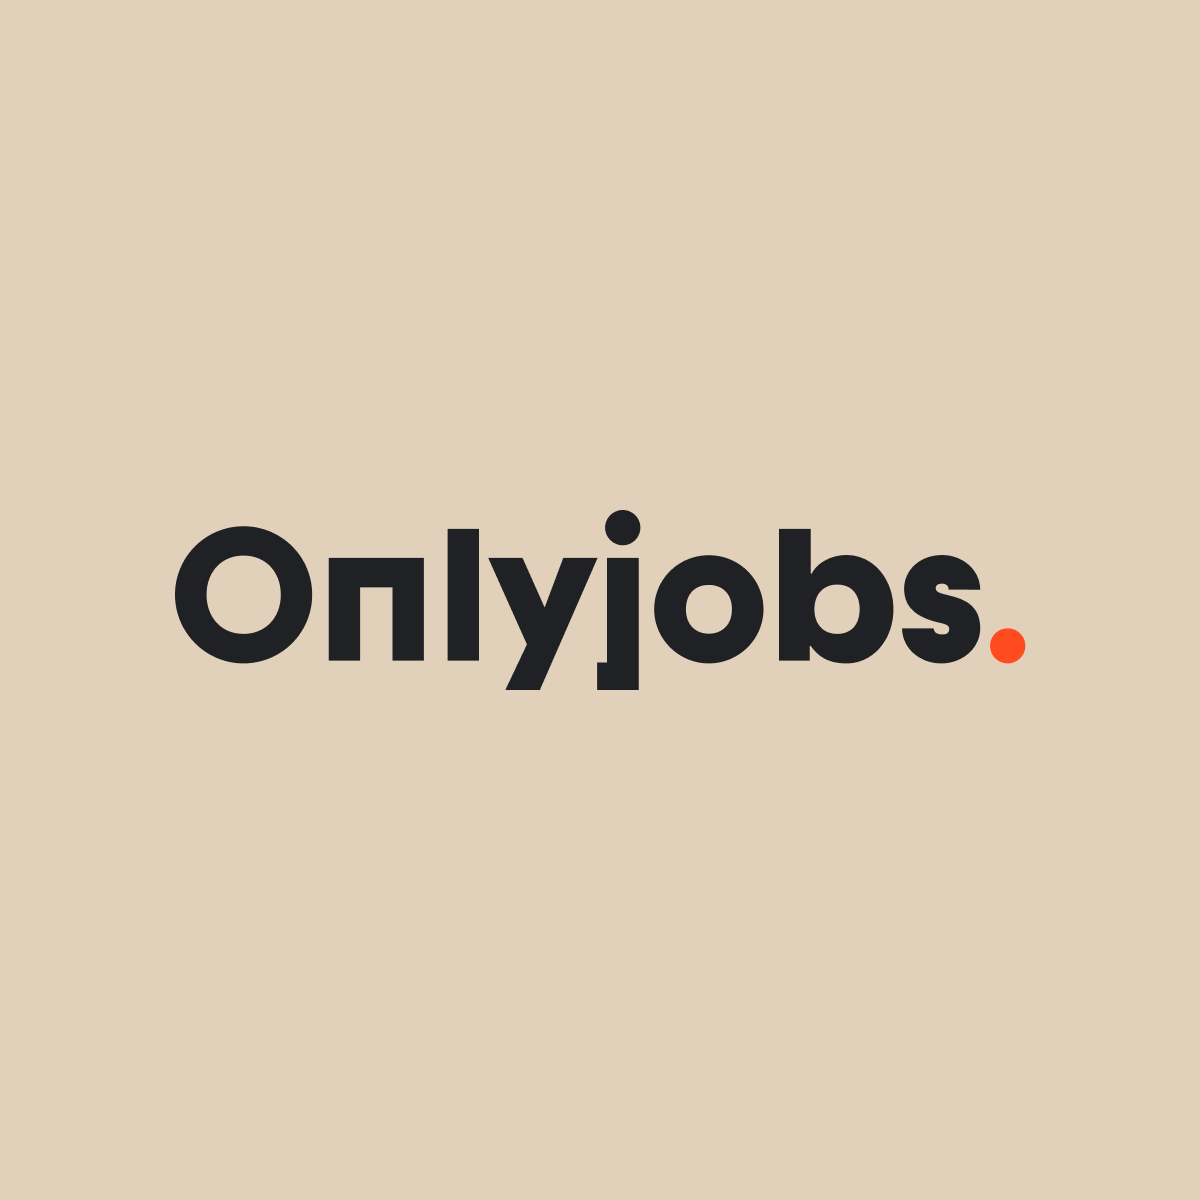 (c) Onlyjobs.io